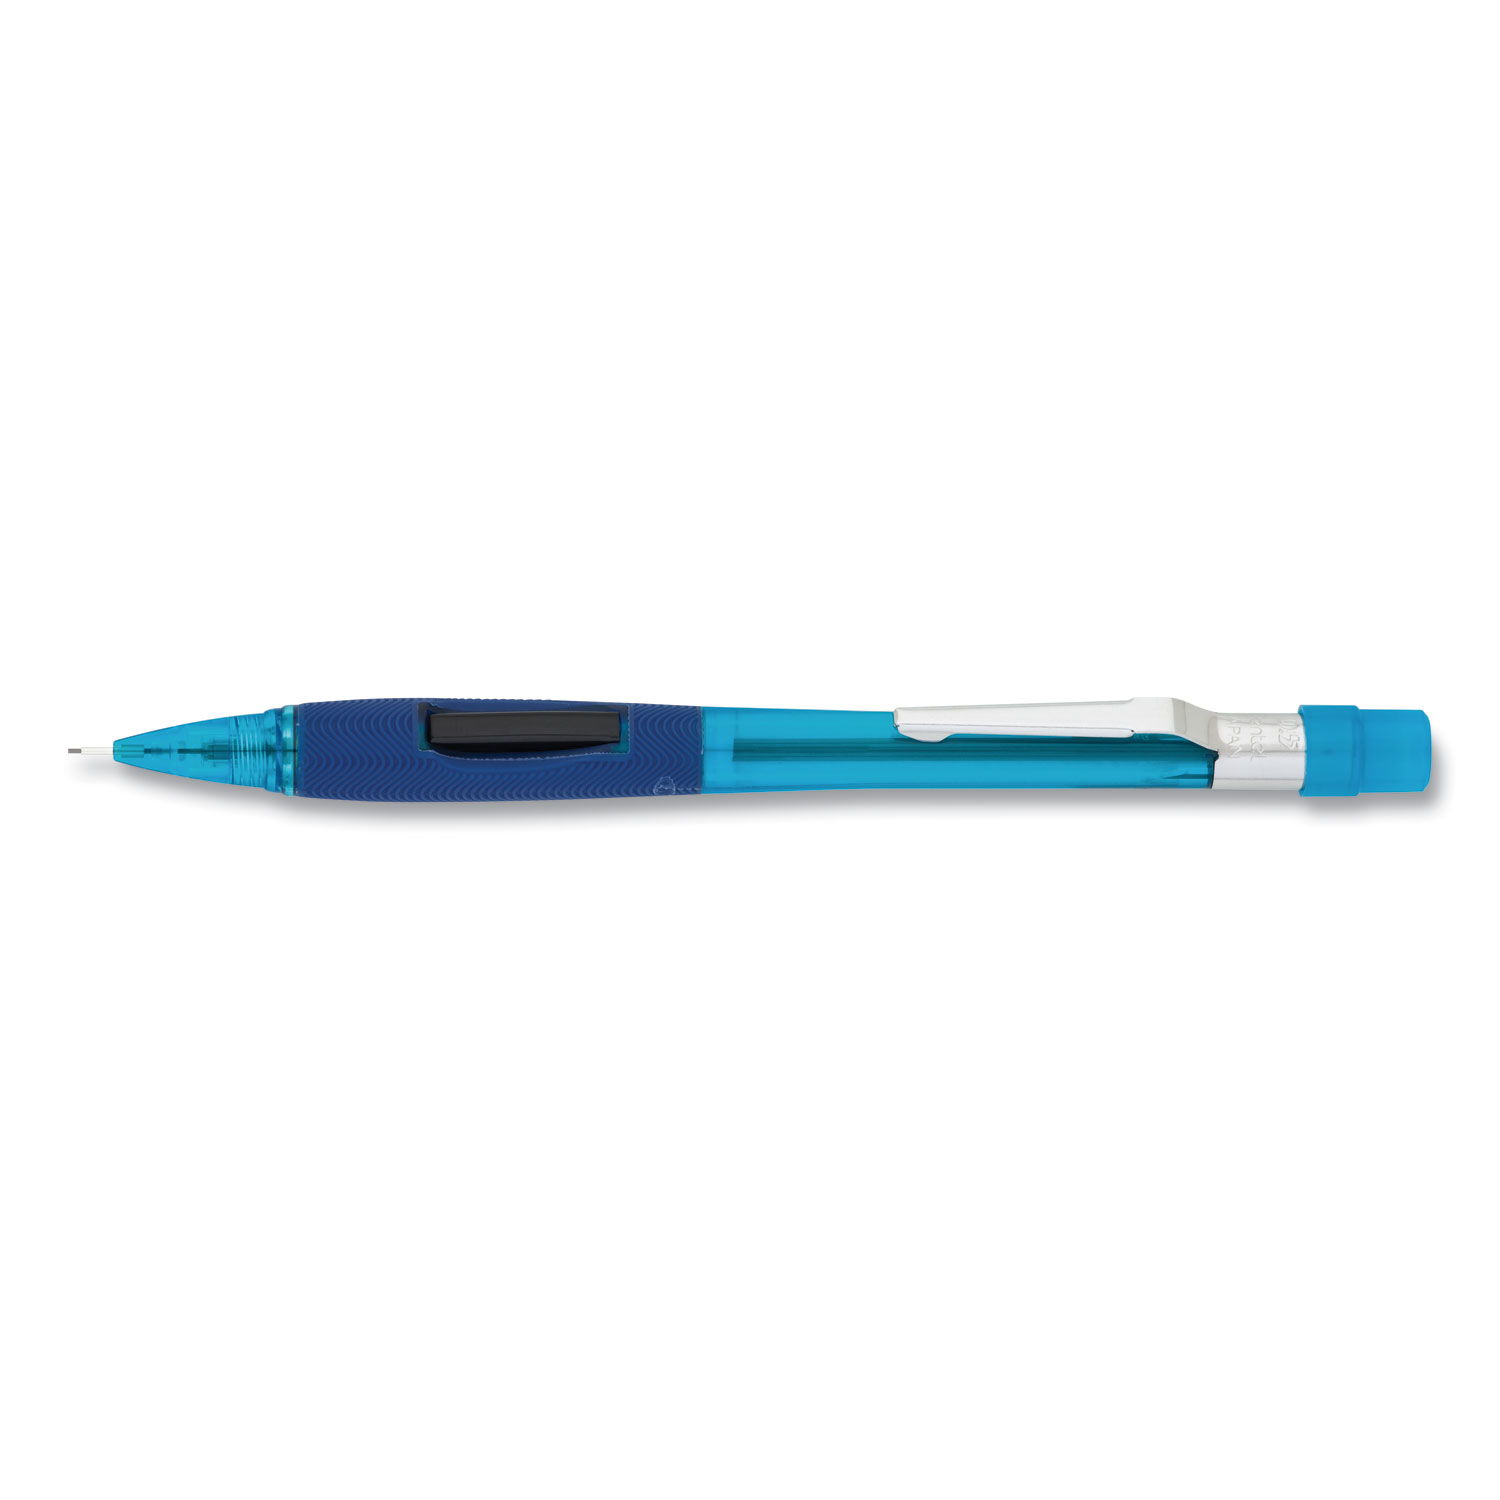  Pentel PD345TC Quicker Clicker Mechanical Pencil, 0.5 mm, HB (#2.5), Black Lead, Transparent Blue Barrel (PENPD345TC) 